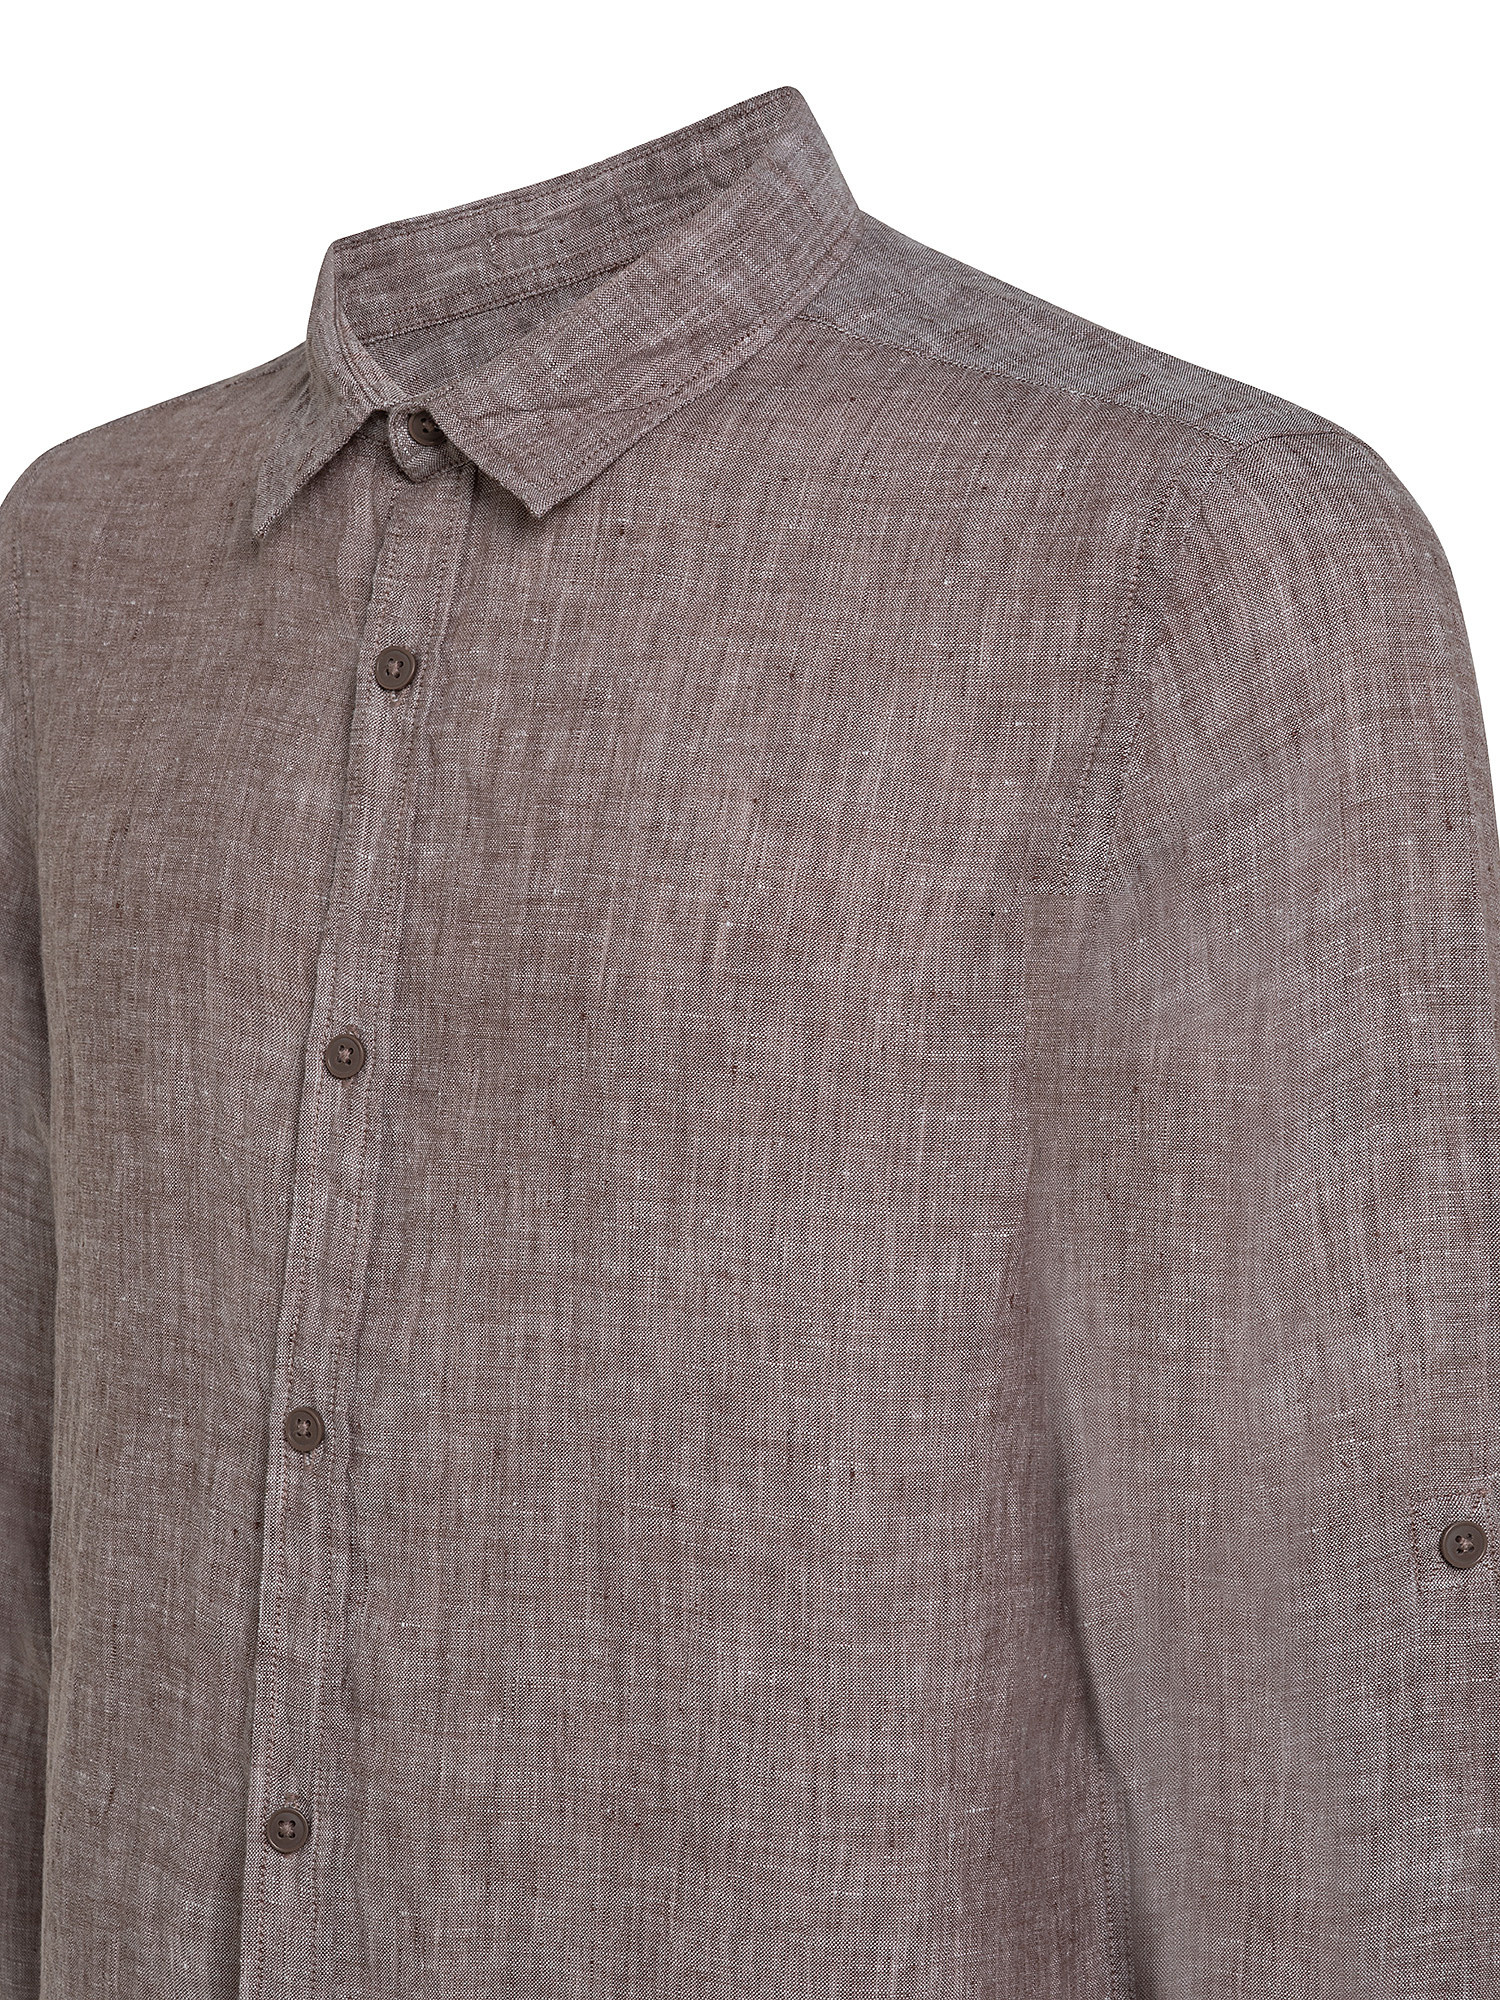 Camicia puro lino collo francese, Marrone chiaro, large image number 2